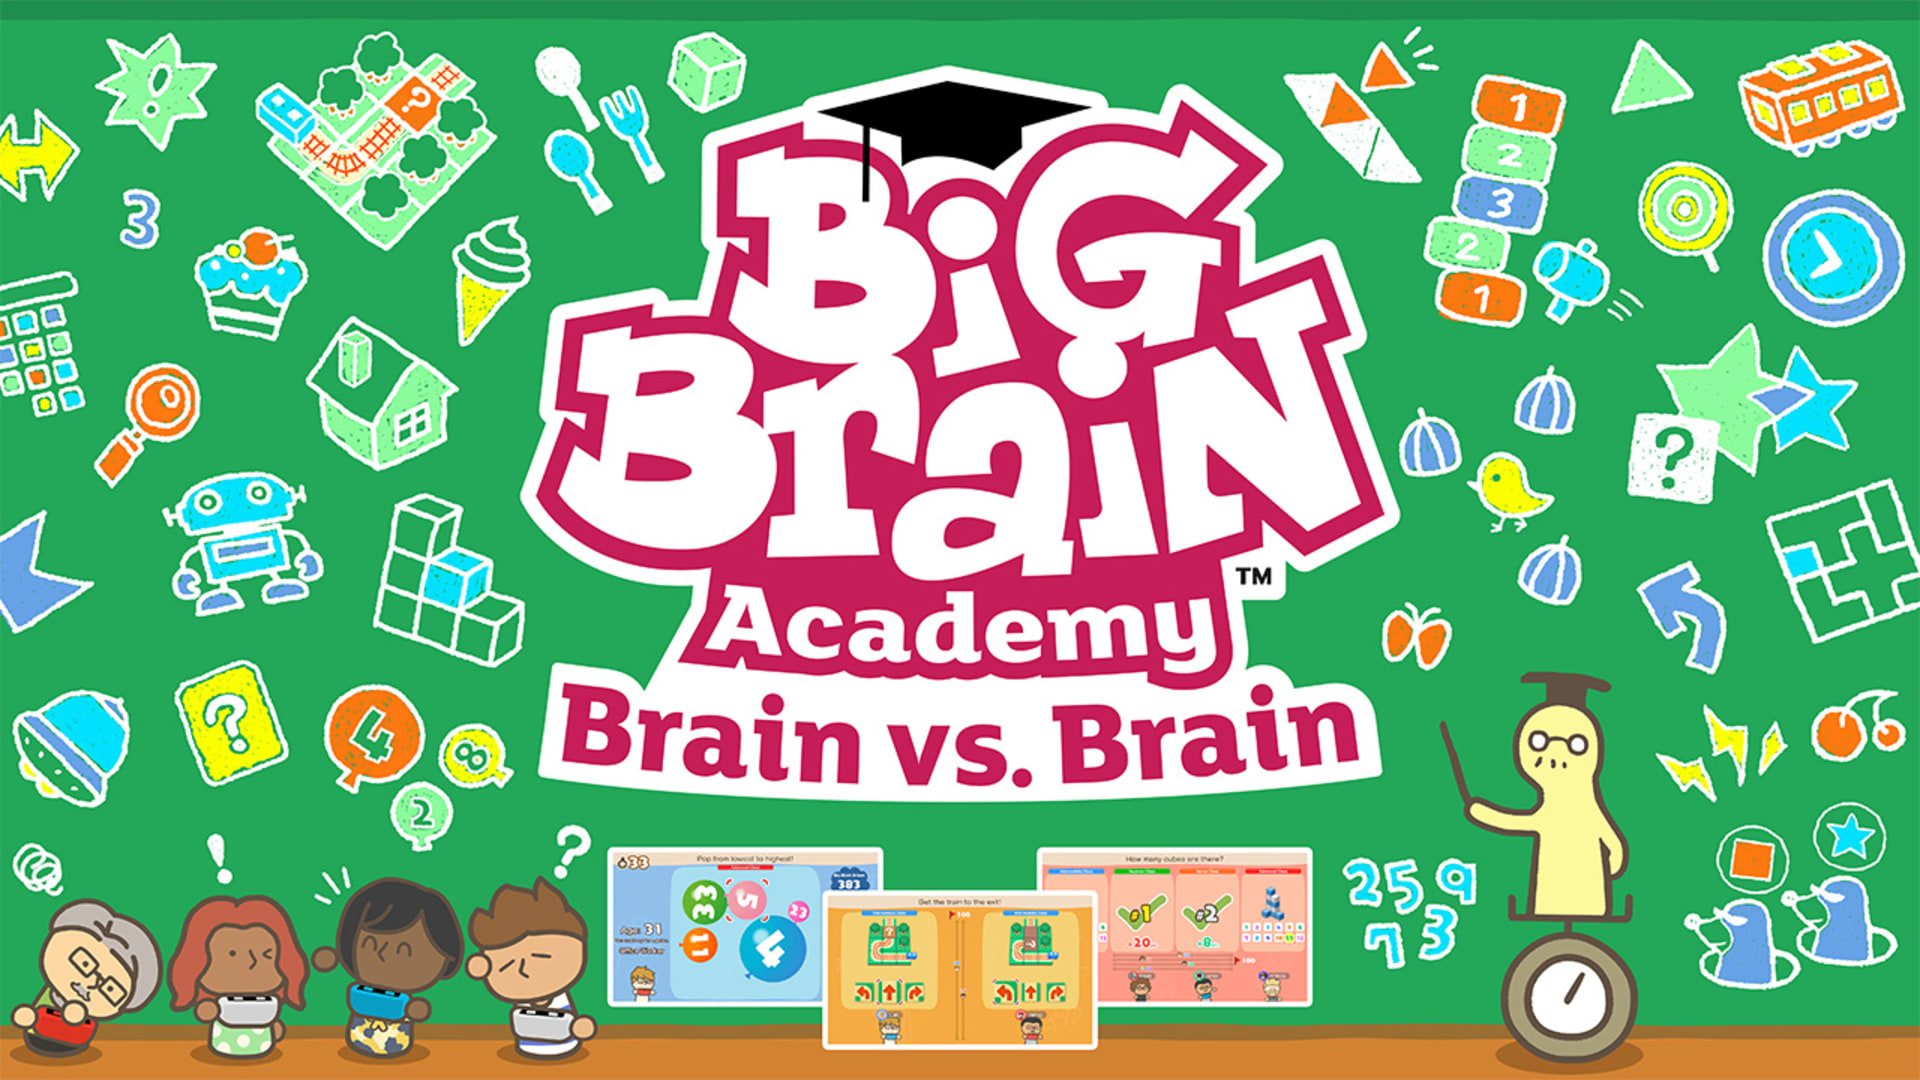 Big-Brain-Academy-Cultura-Geek-4